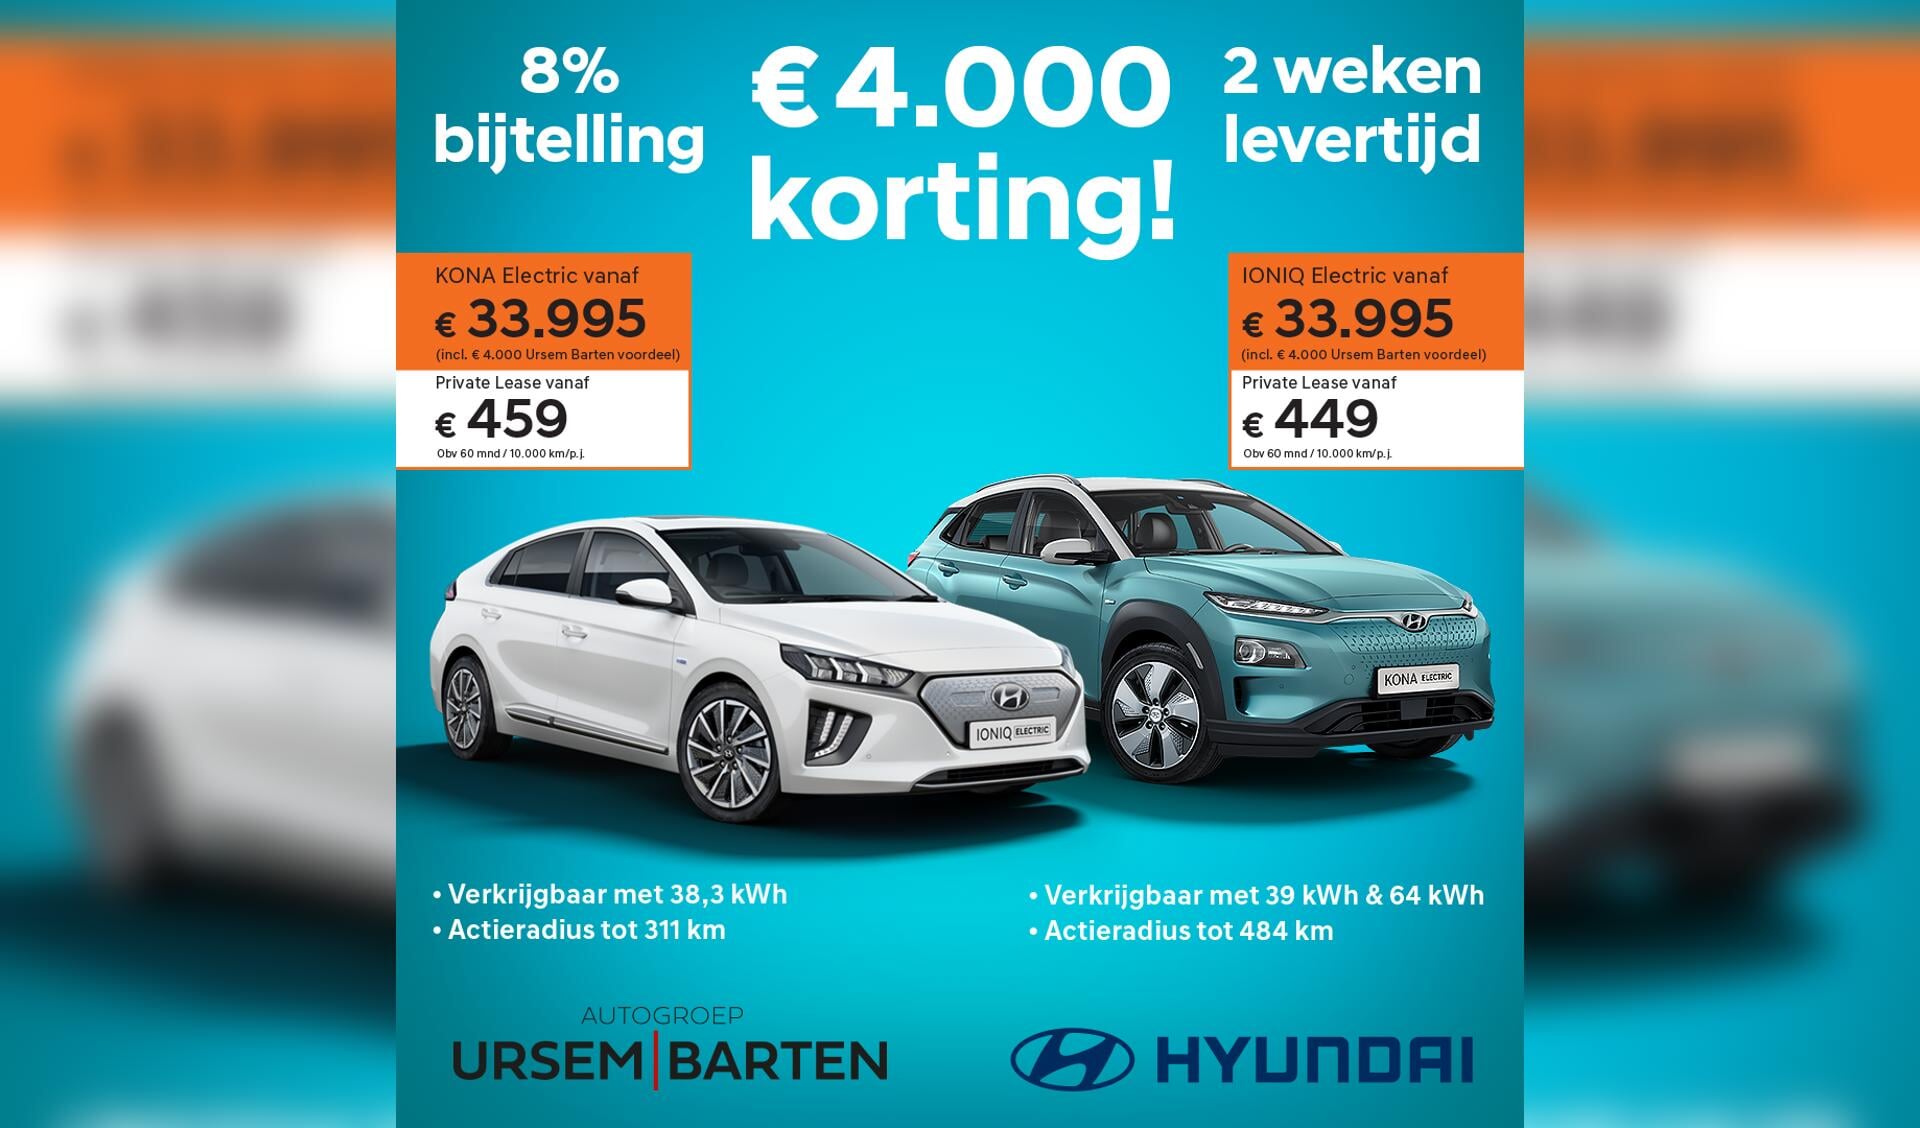 Hyundai met € 4.000,00 korting.